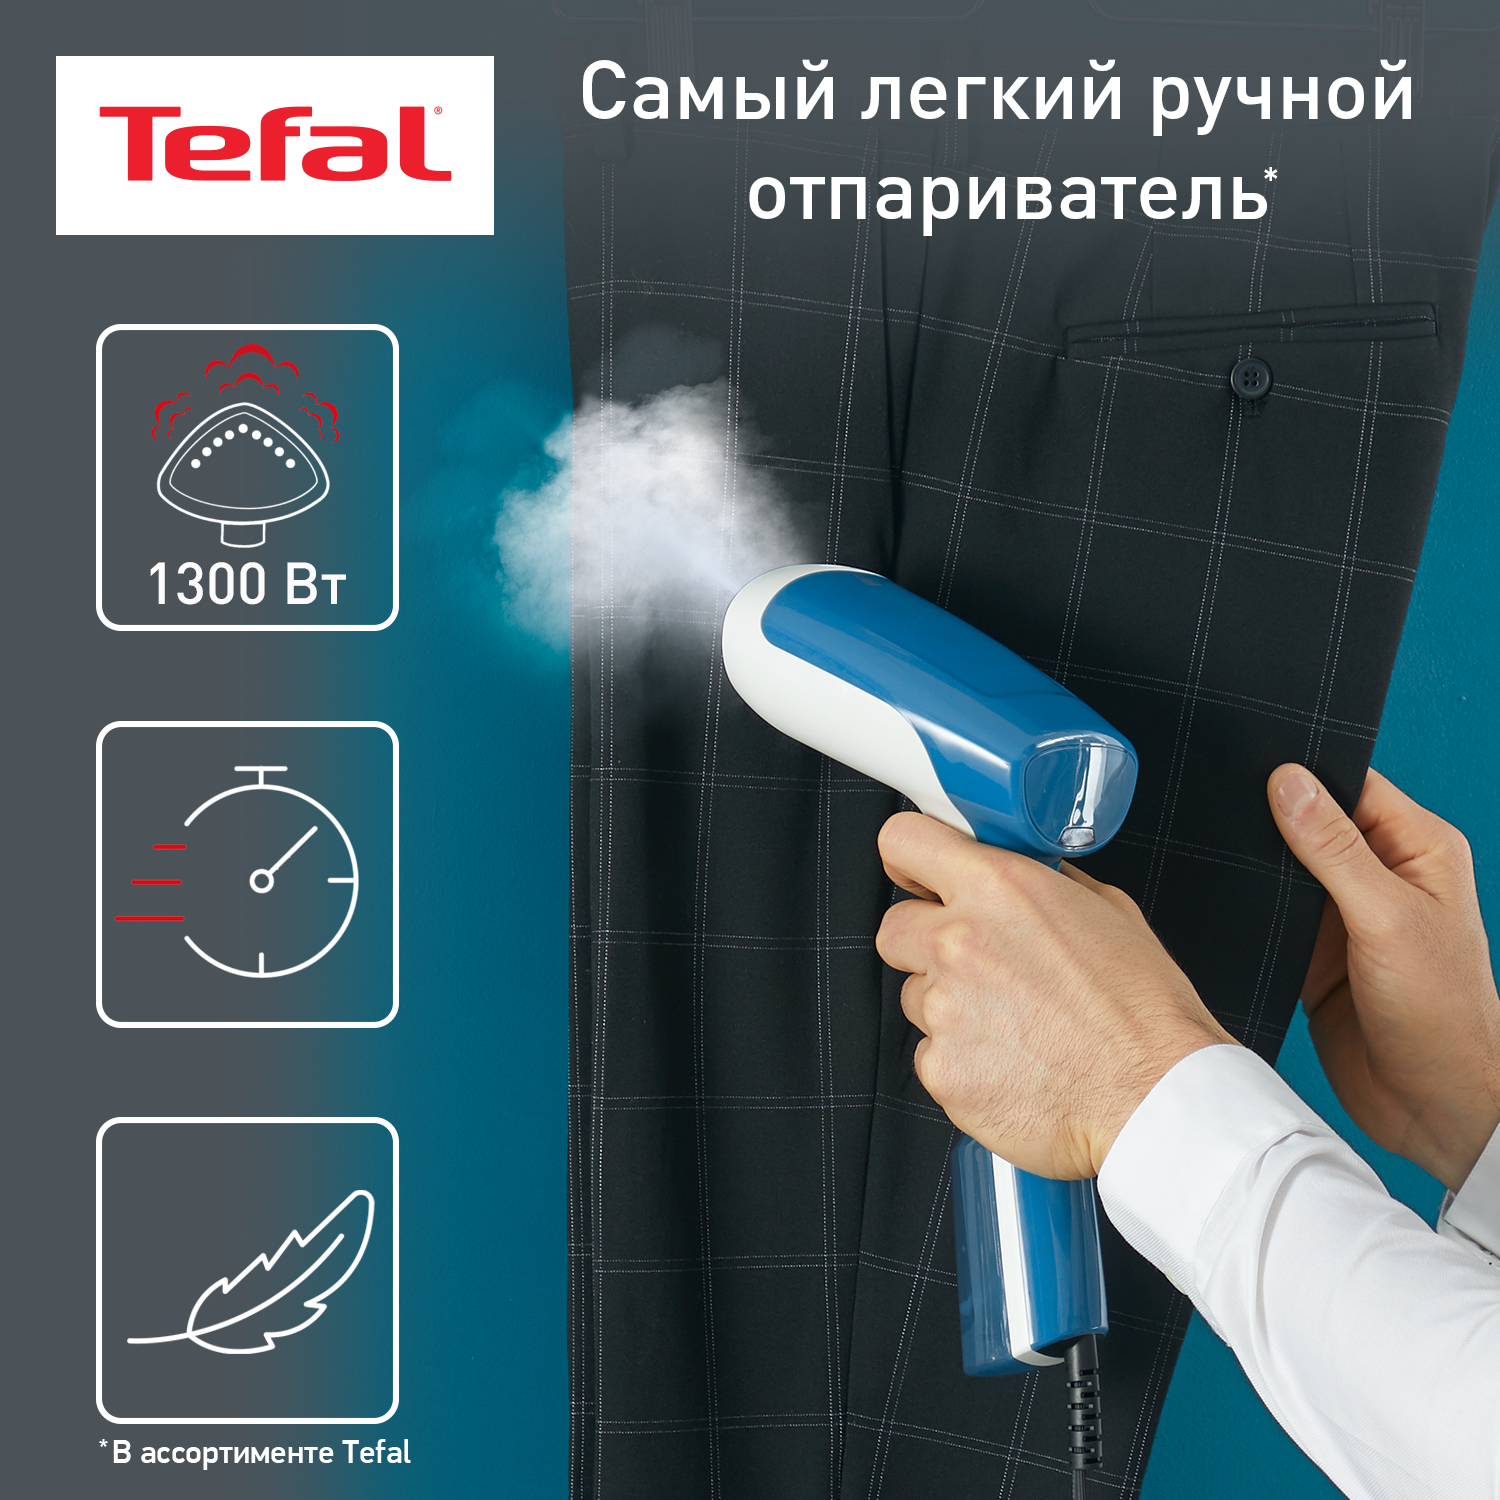 Ручной отпариватель Tefal DT6130E0, купить в Москве, цены в интернет-магазинах на Мегамаркет